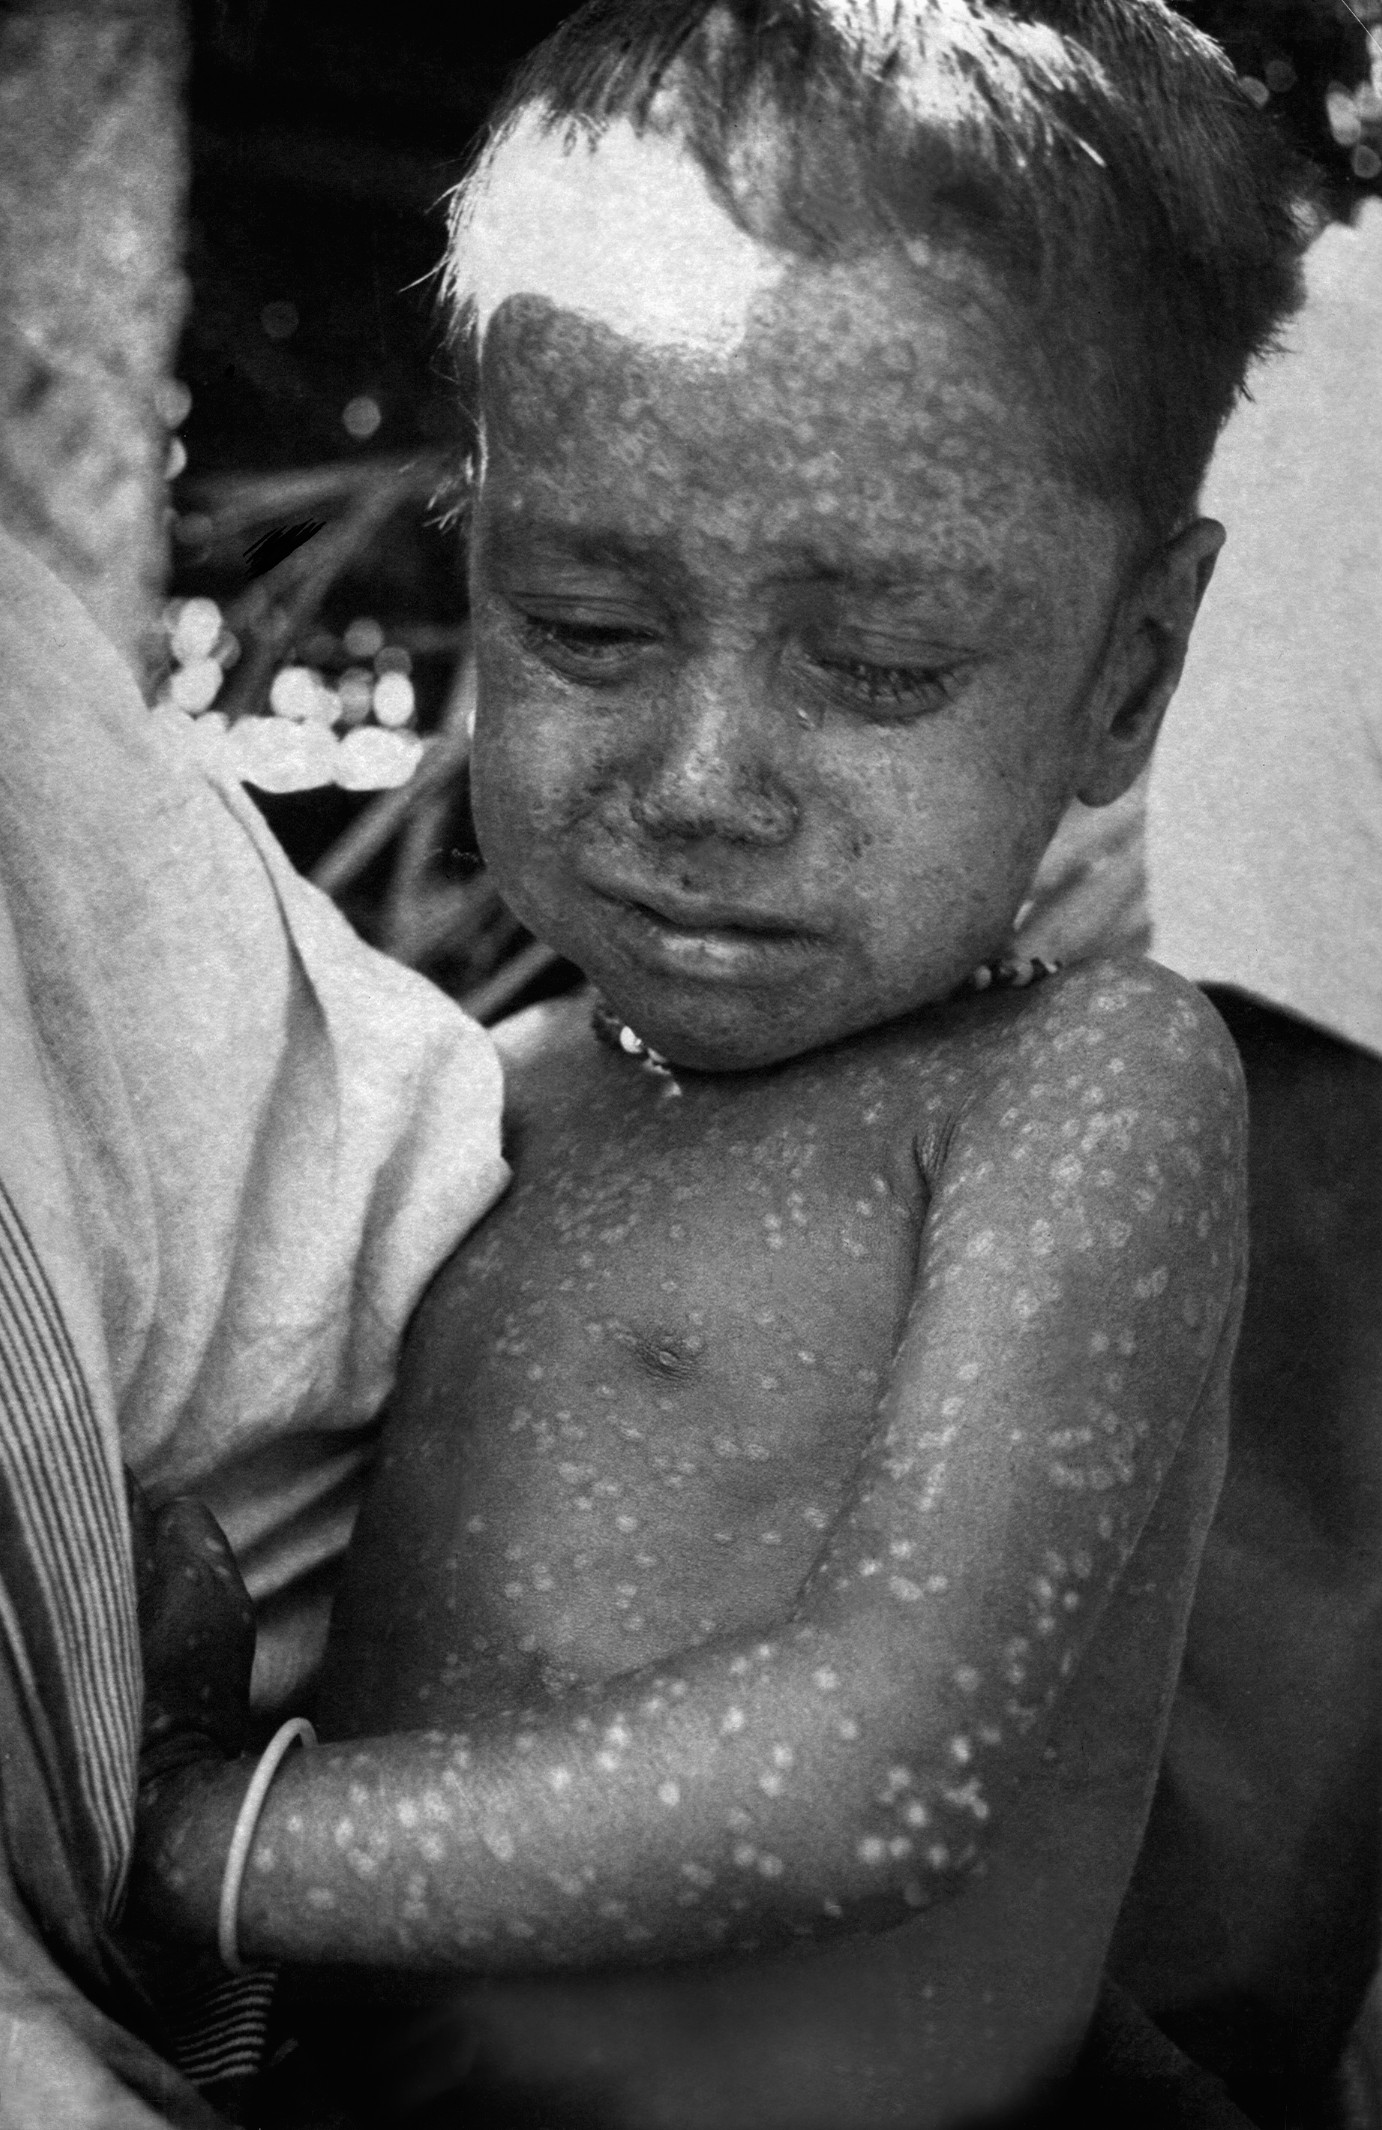 Rahima Banu, de Bangladesh, menina de 2 anos que foi a última paciente de varíola do mundo. A foto é de 1975. (Foto: reprodução)